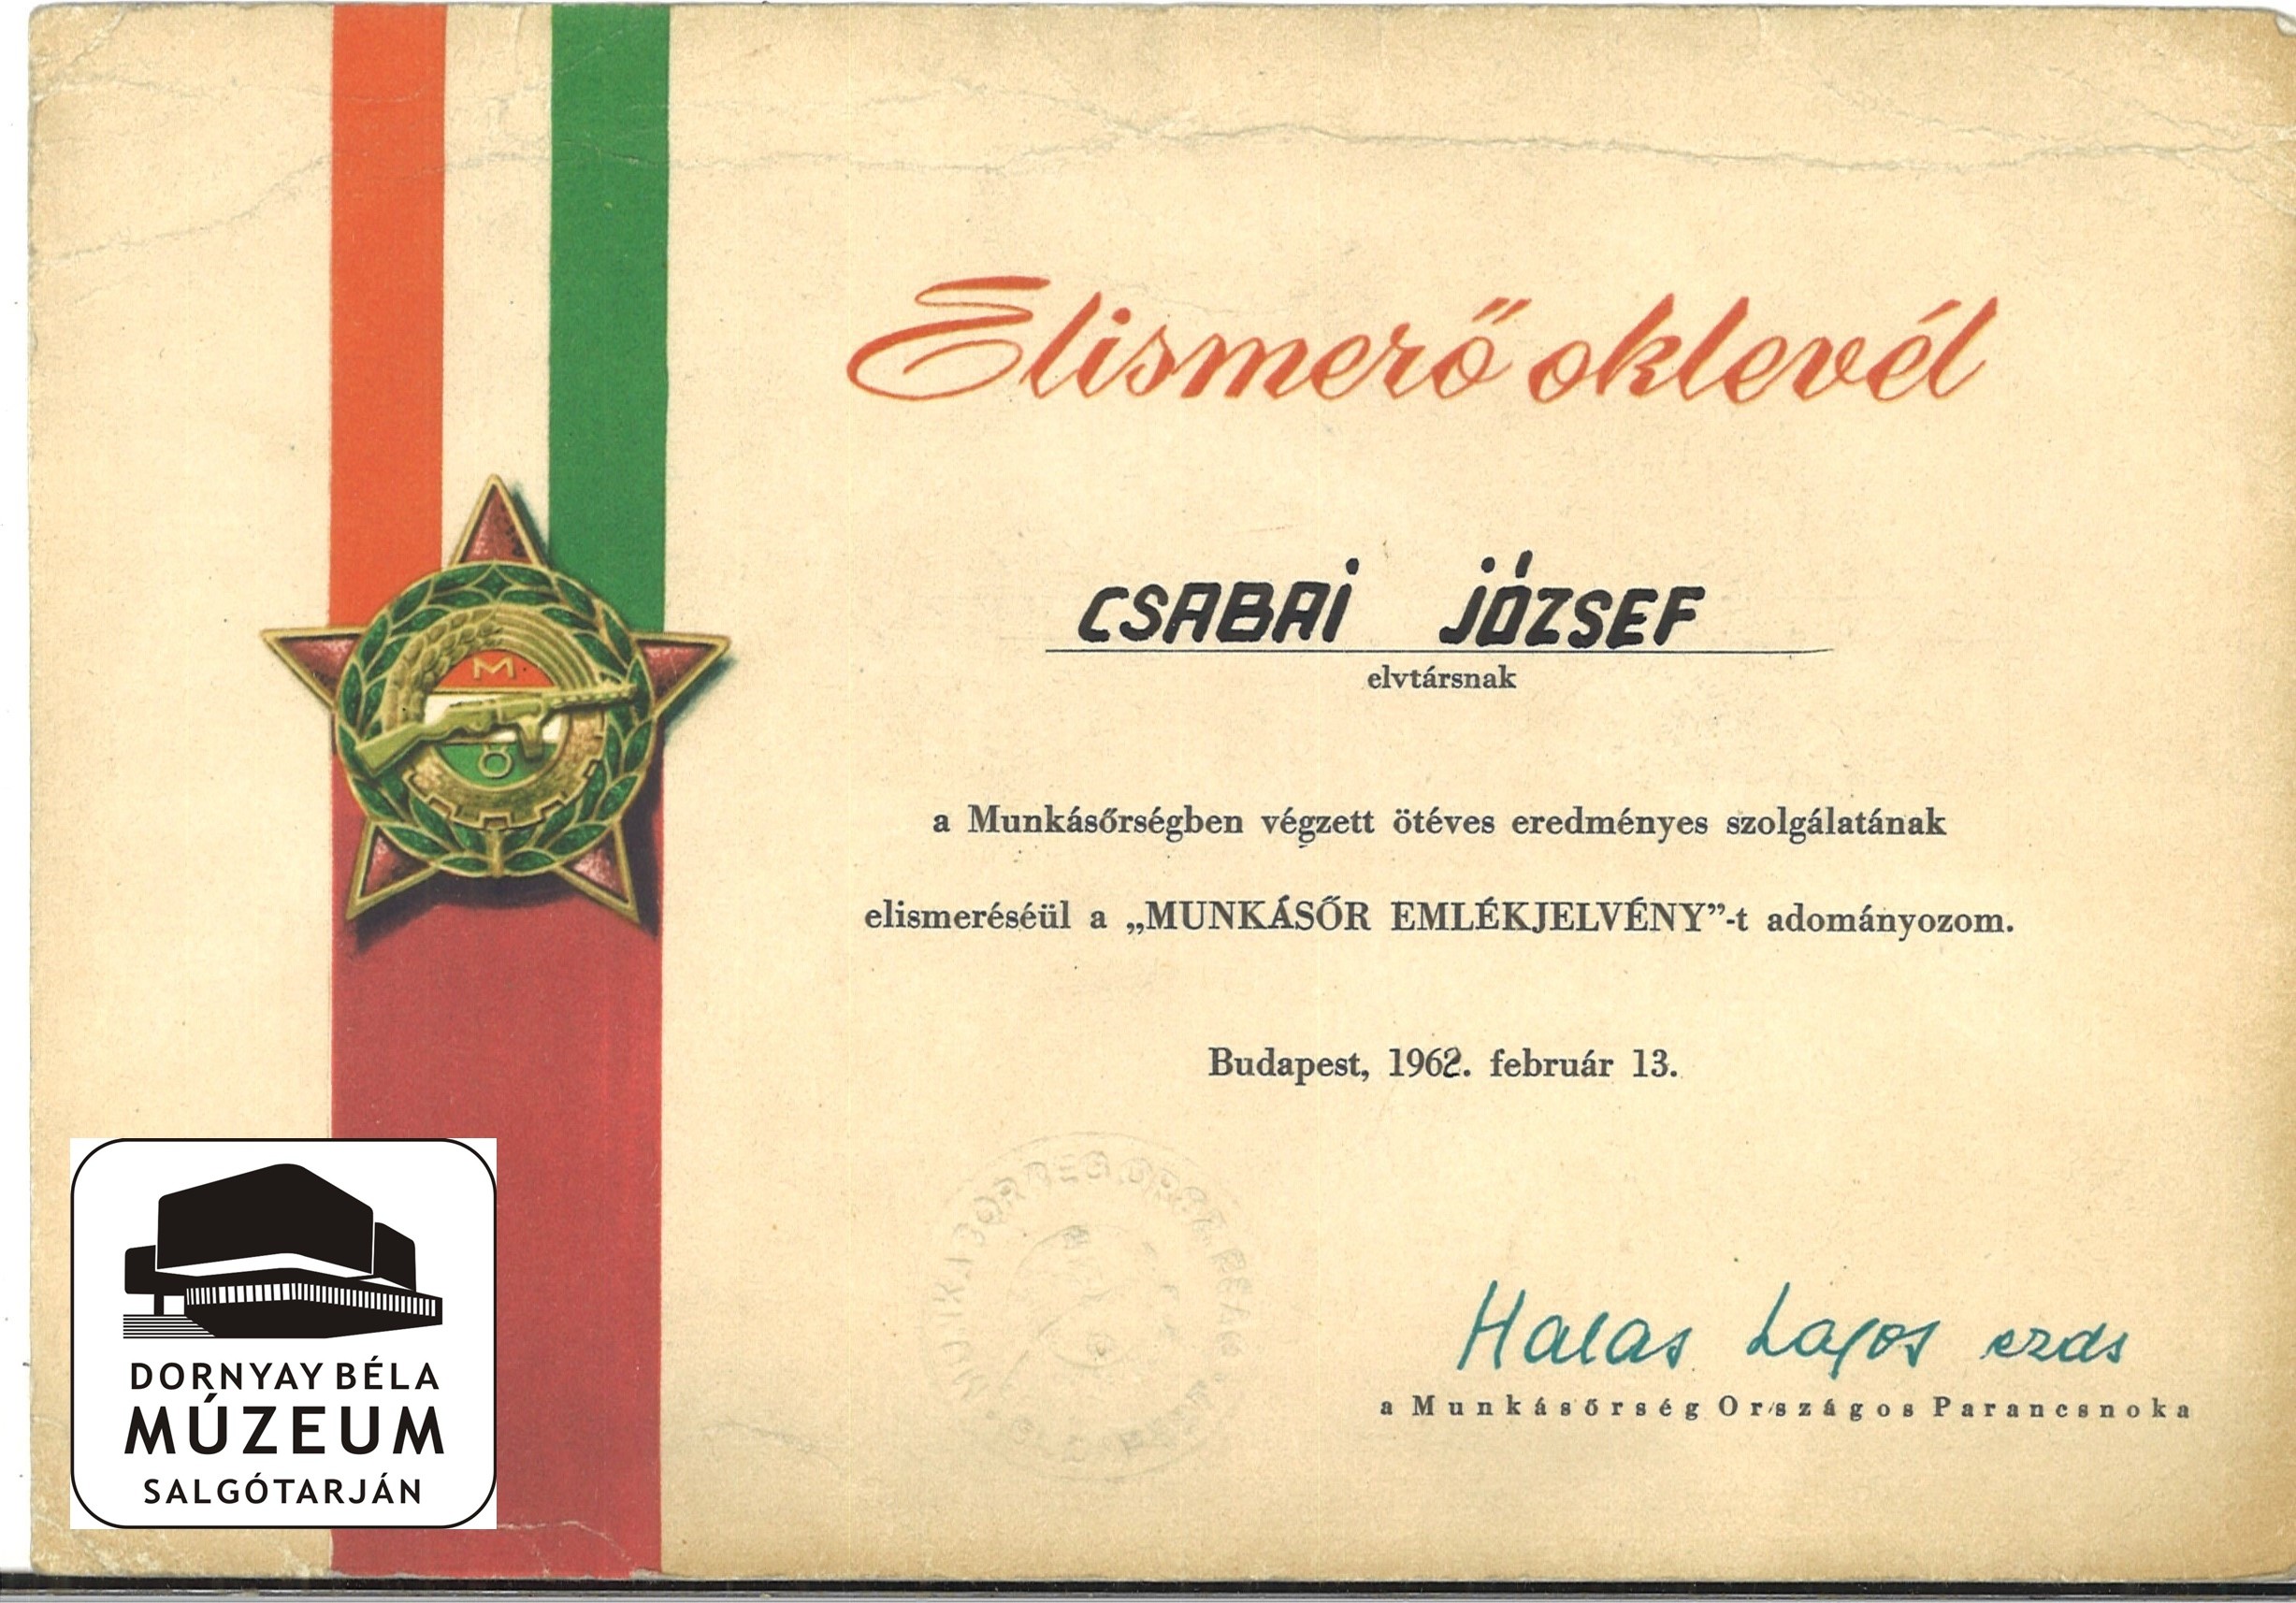 Csabai József névre kiállított oklevelek, emléklapok (Dornyay Béla Múzeum, Salgótarján CC BY-NC-SA)